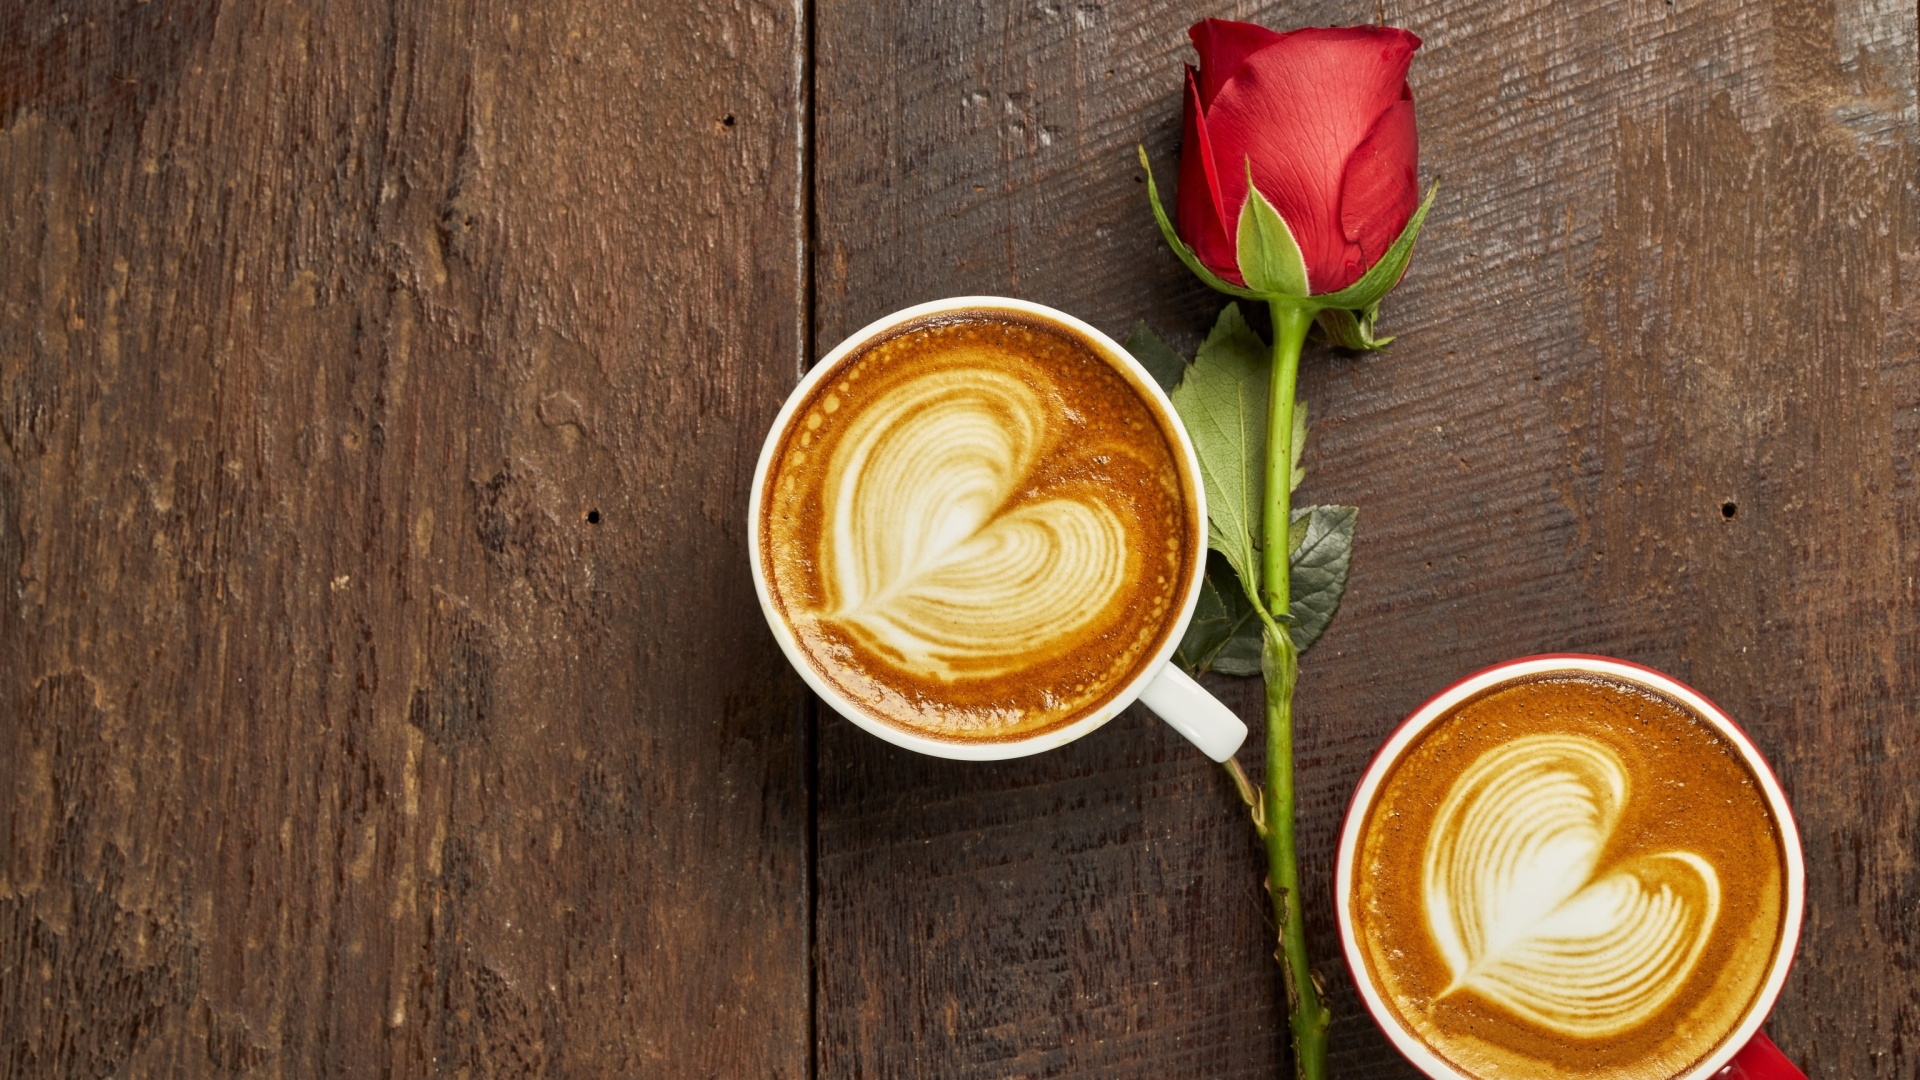 Обои Romantic Coffee and Rose 1920x1080